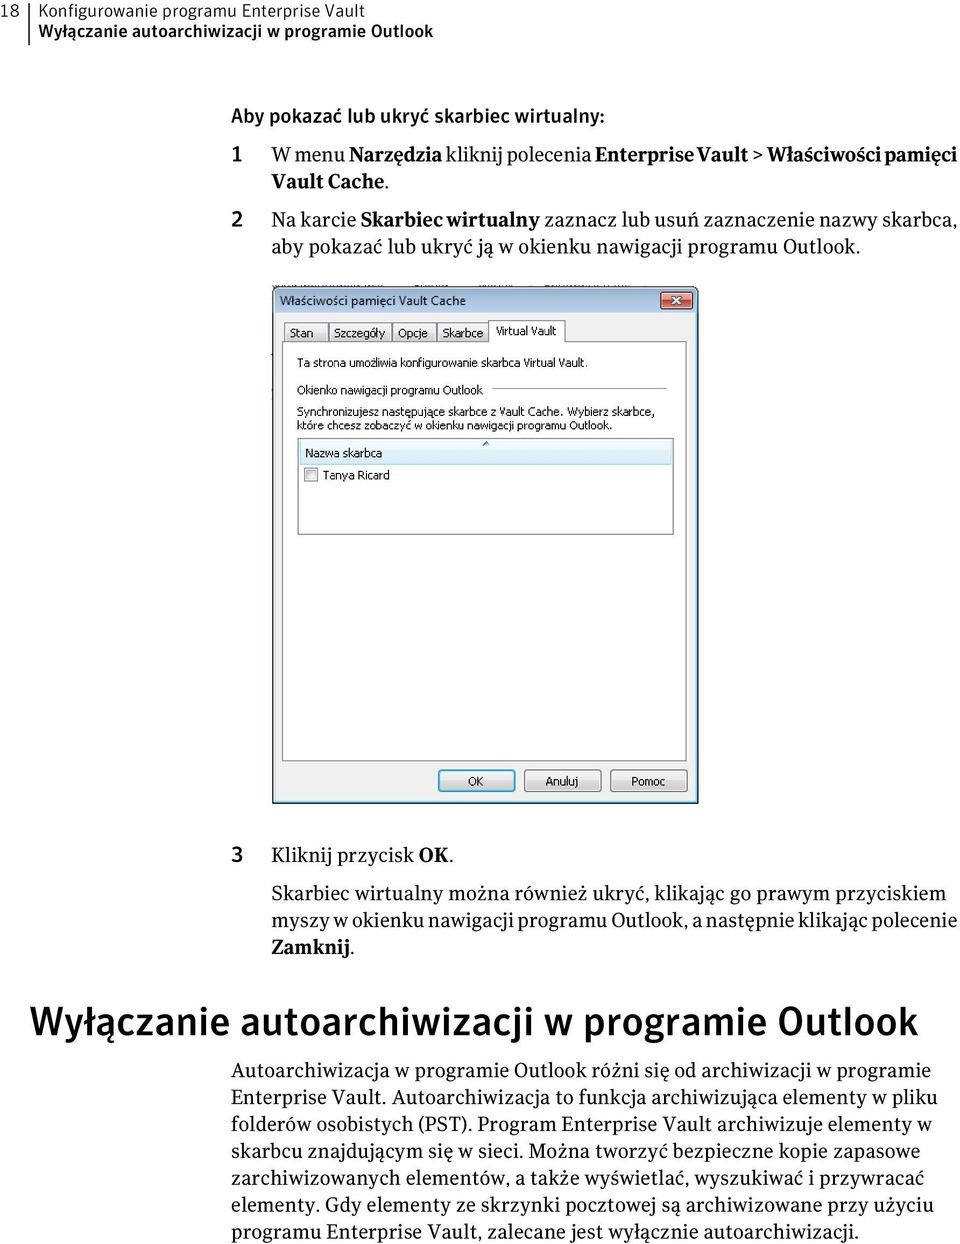 Skarbiec wirtualny można również ukryć, klikając go prawym przyciskiem myszy w okienku nawigacji programu Outlook, a następnie klikając polecenie Zamknij.